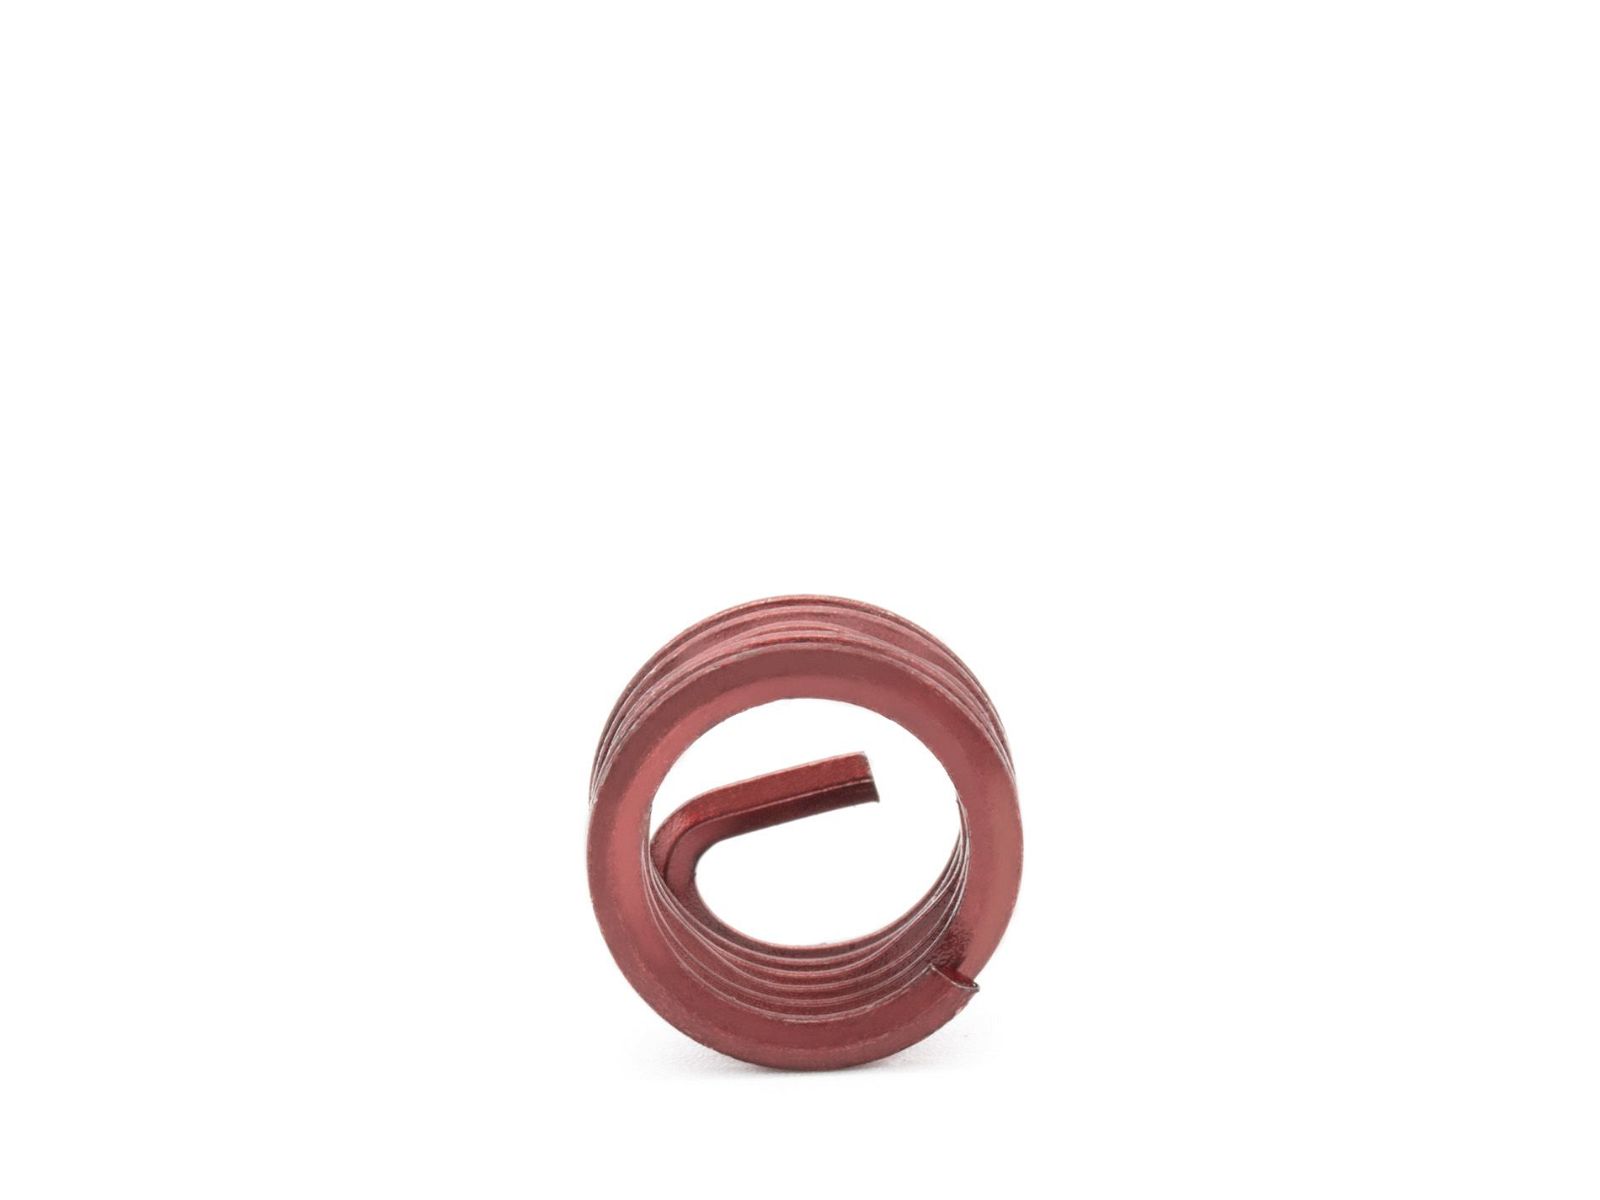 BaerCoil Wire Thread Inserts M 4 x 0.7 - 1.0 D (4 mm) - screw grip (screw locking) - 100 pcs.